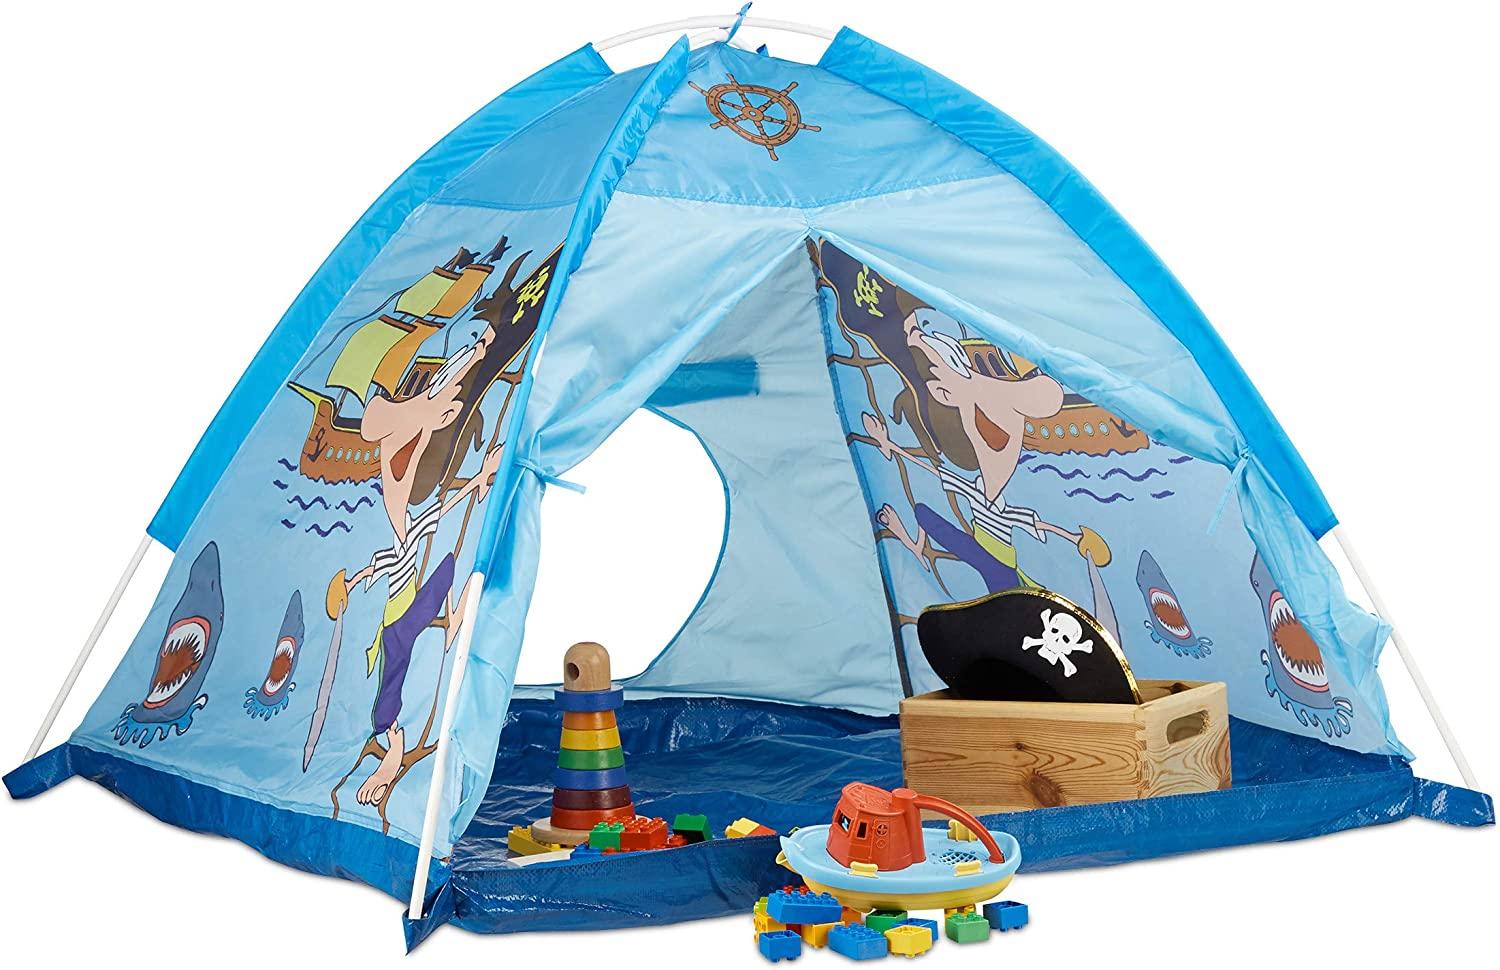 Relaxdays Spielzelt Pirat, Kinderzelt für Jungen ab 3 Jahre, Indoor und Outdoor Piratenzelt HxBxT 90x118x115 cm, blau Bild 1